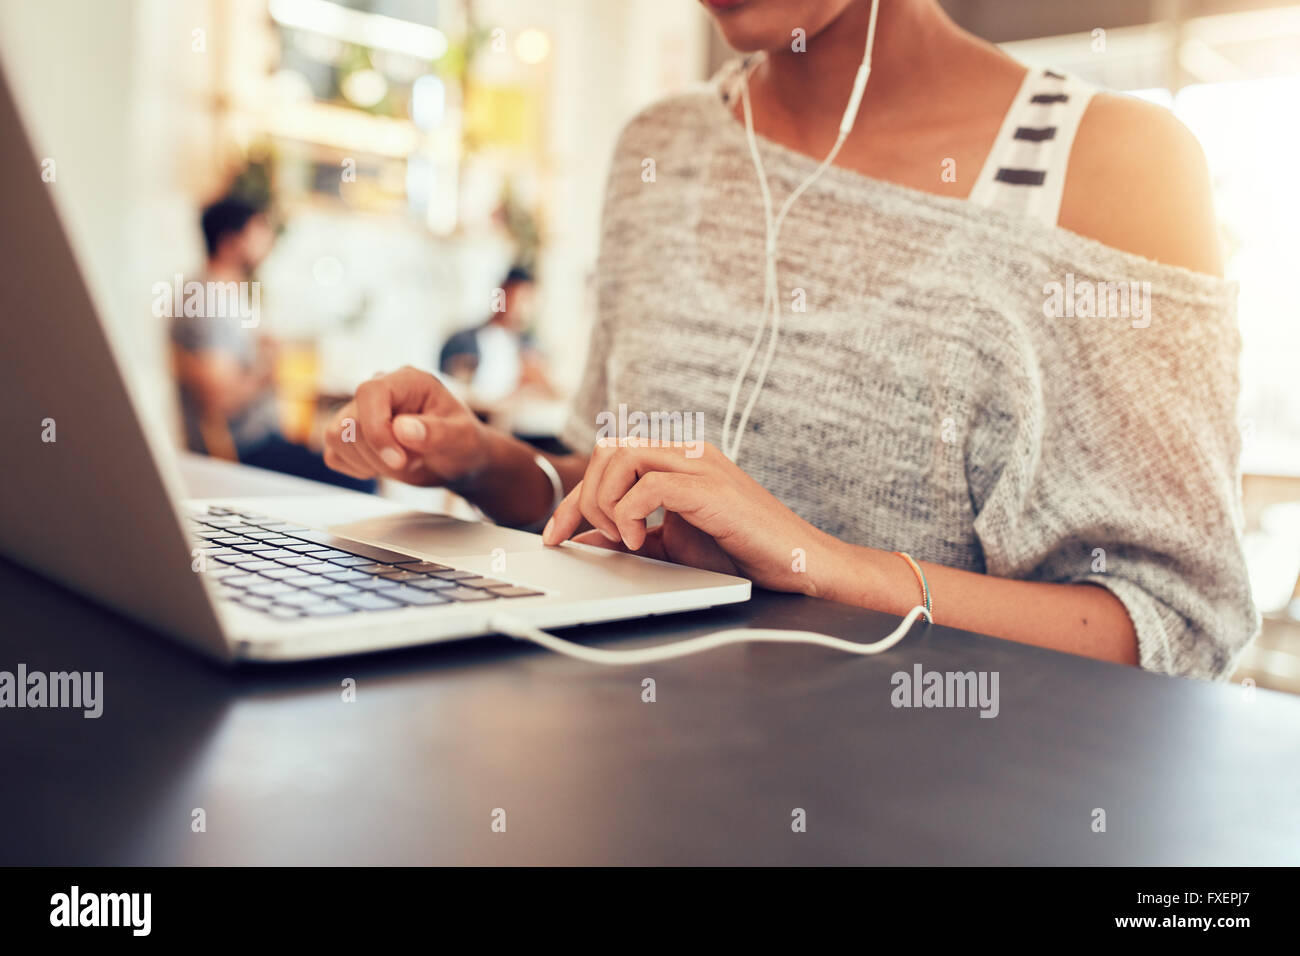 Portrait of young woman using laptop at coffee shop. Close up portrait of woman working on laptop computer, avec l'accent sur l Banque D'Images